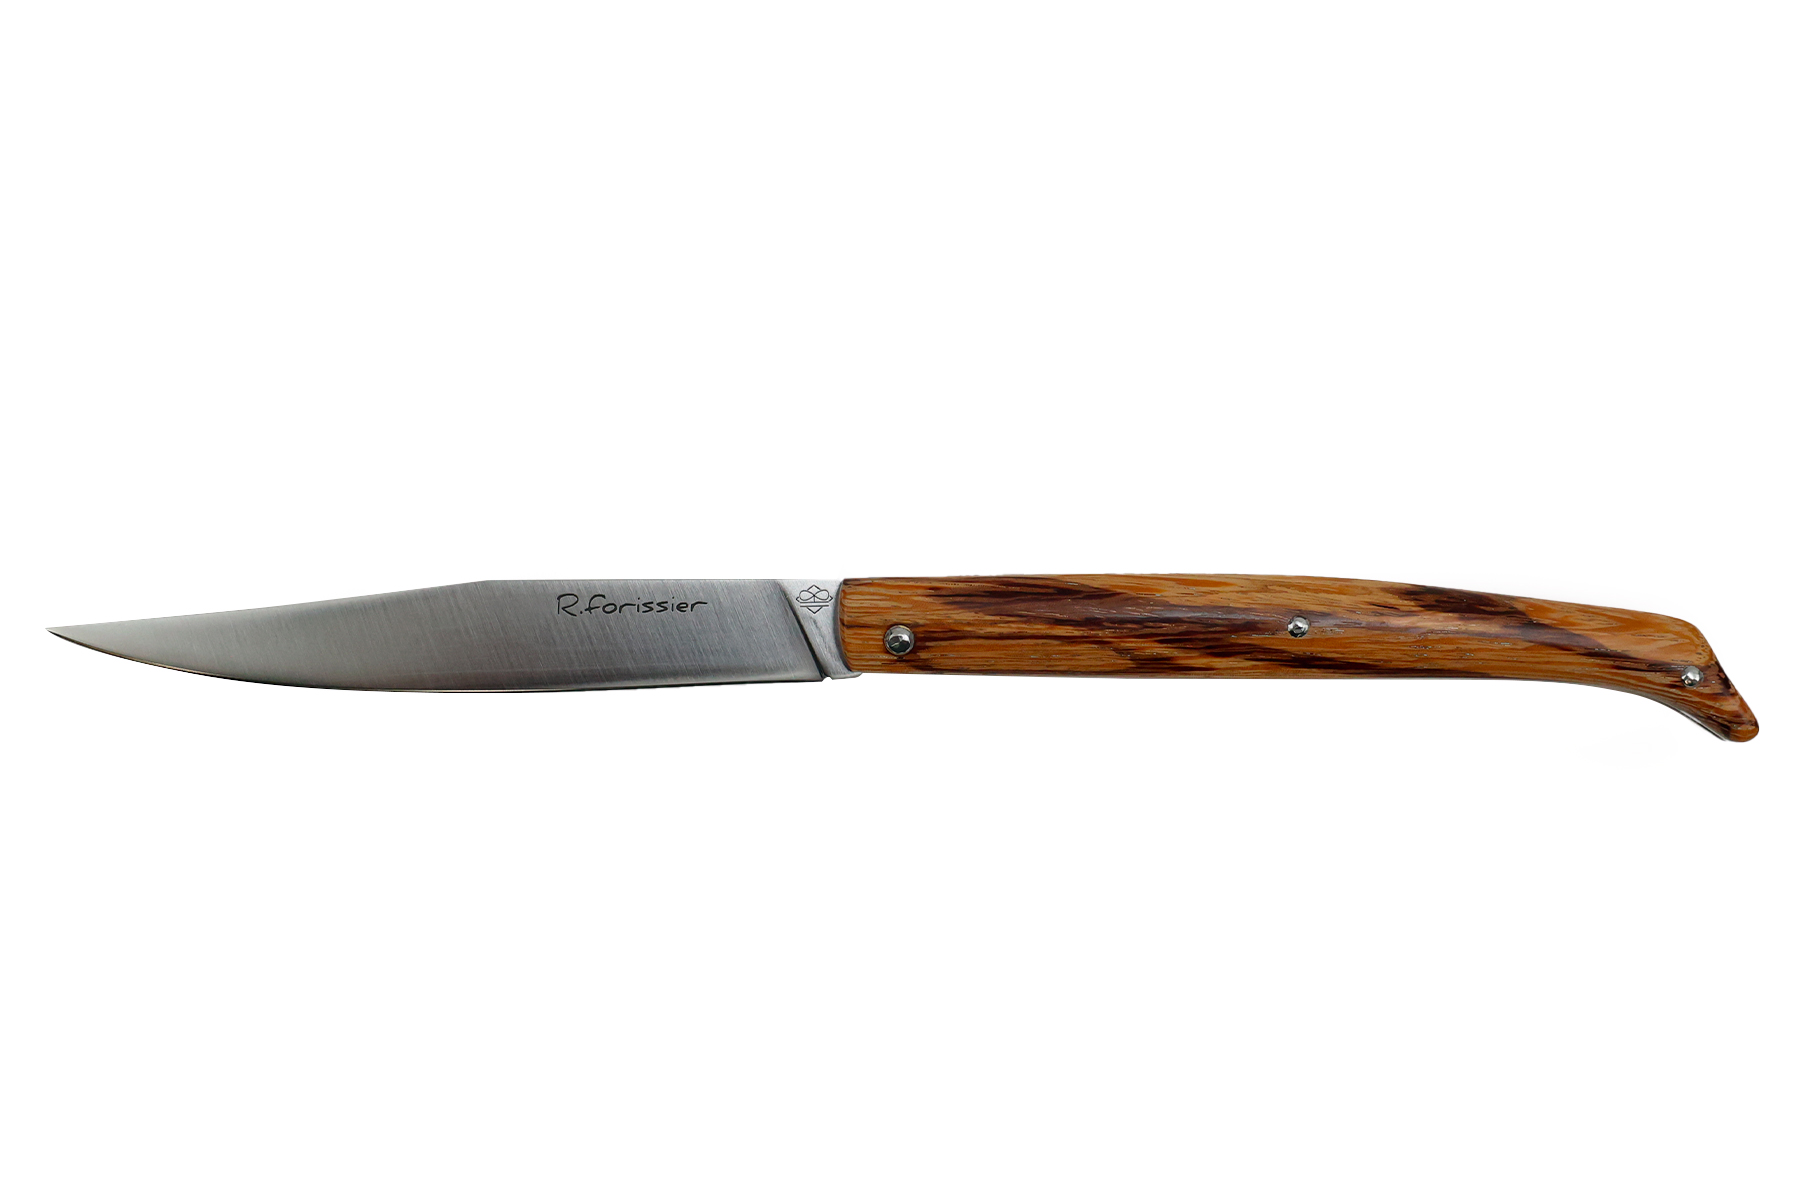 Couteau pliant de Robin Forissier modèle Le Chiloé - bois de serpent